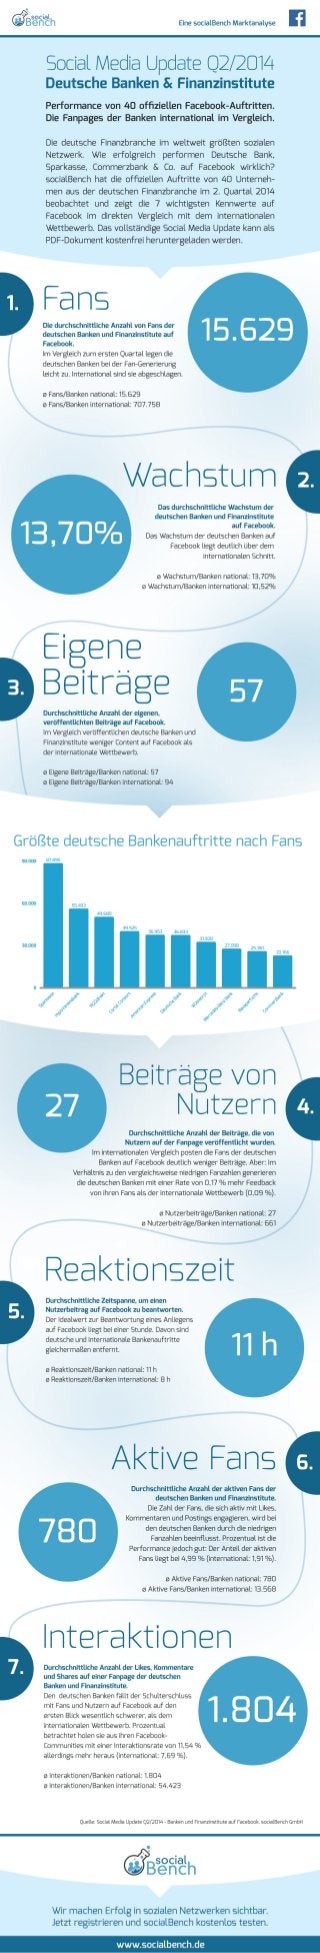 Infografik: Social Media Update Q2/2014 - deutsche Banken und Finanzinstitute auf Facebook